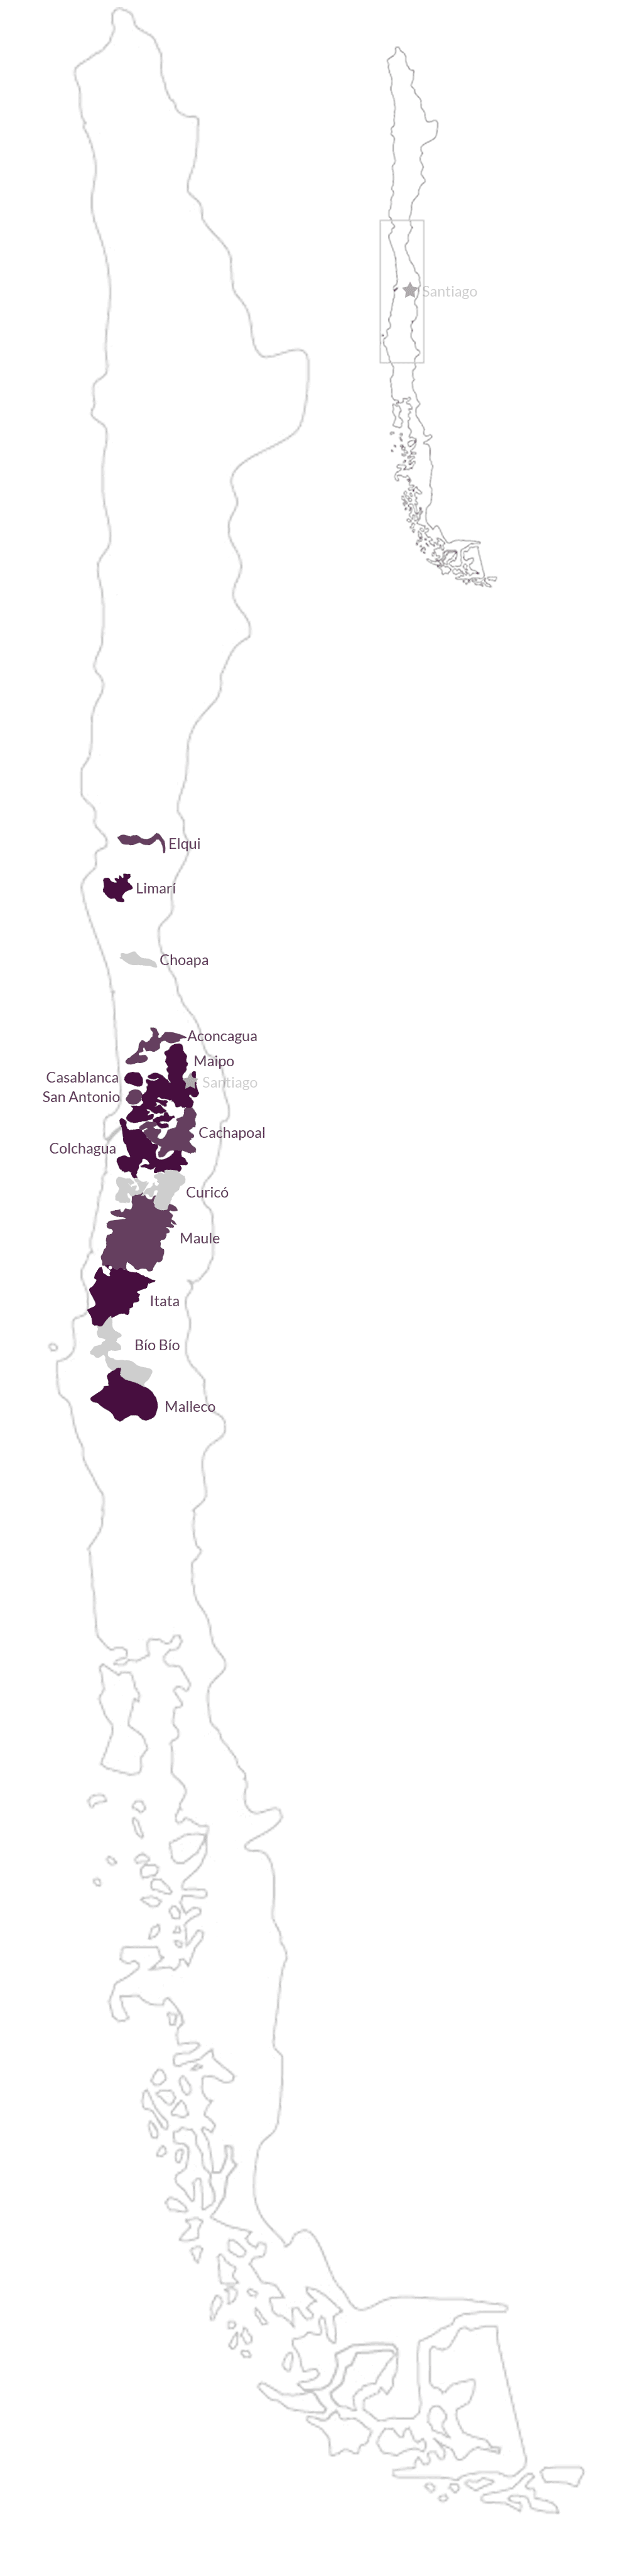 Chilean wine regions